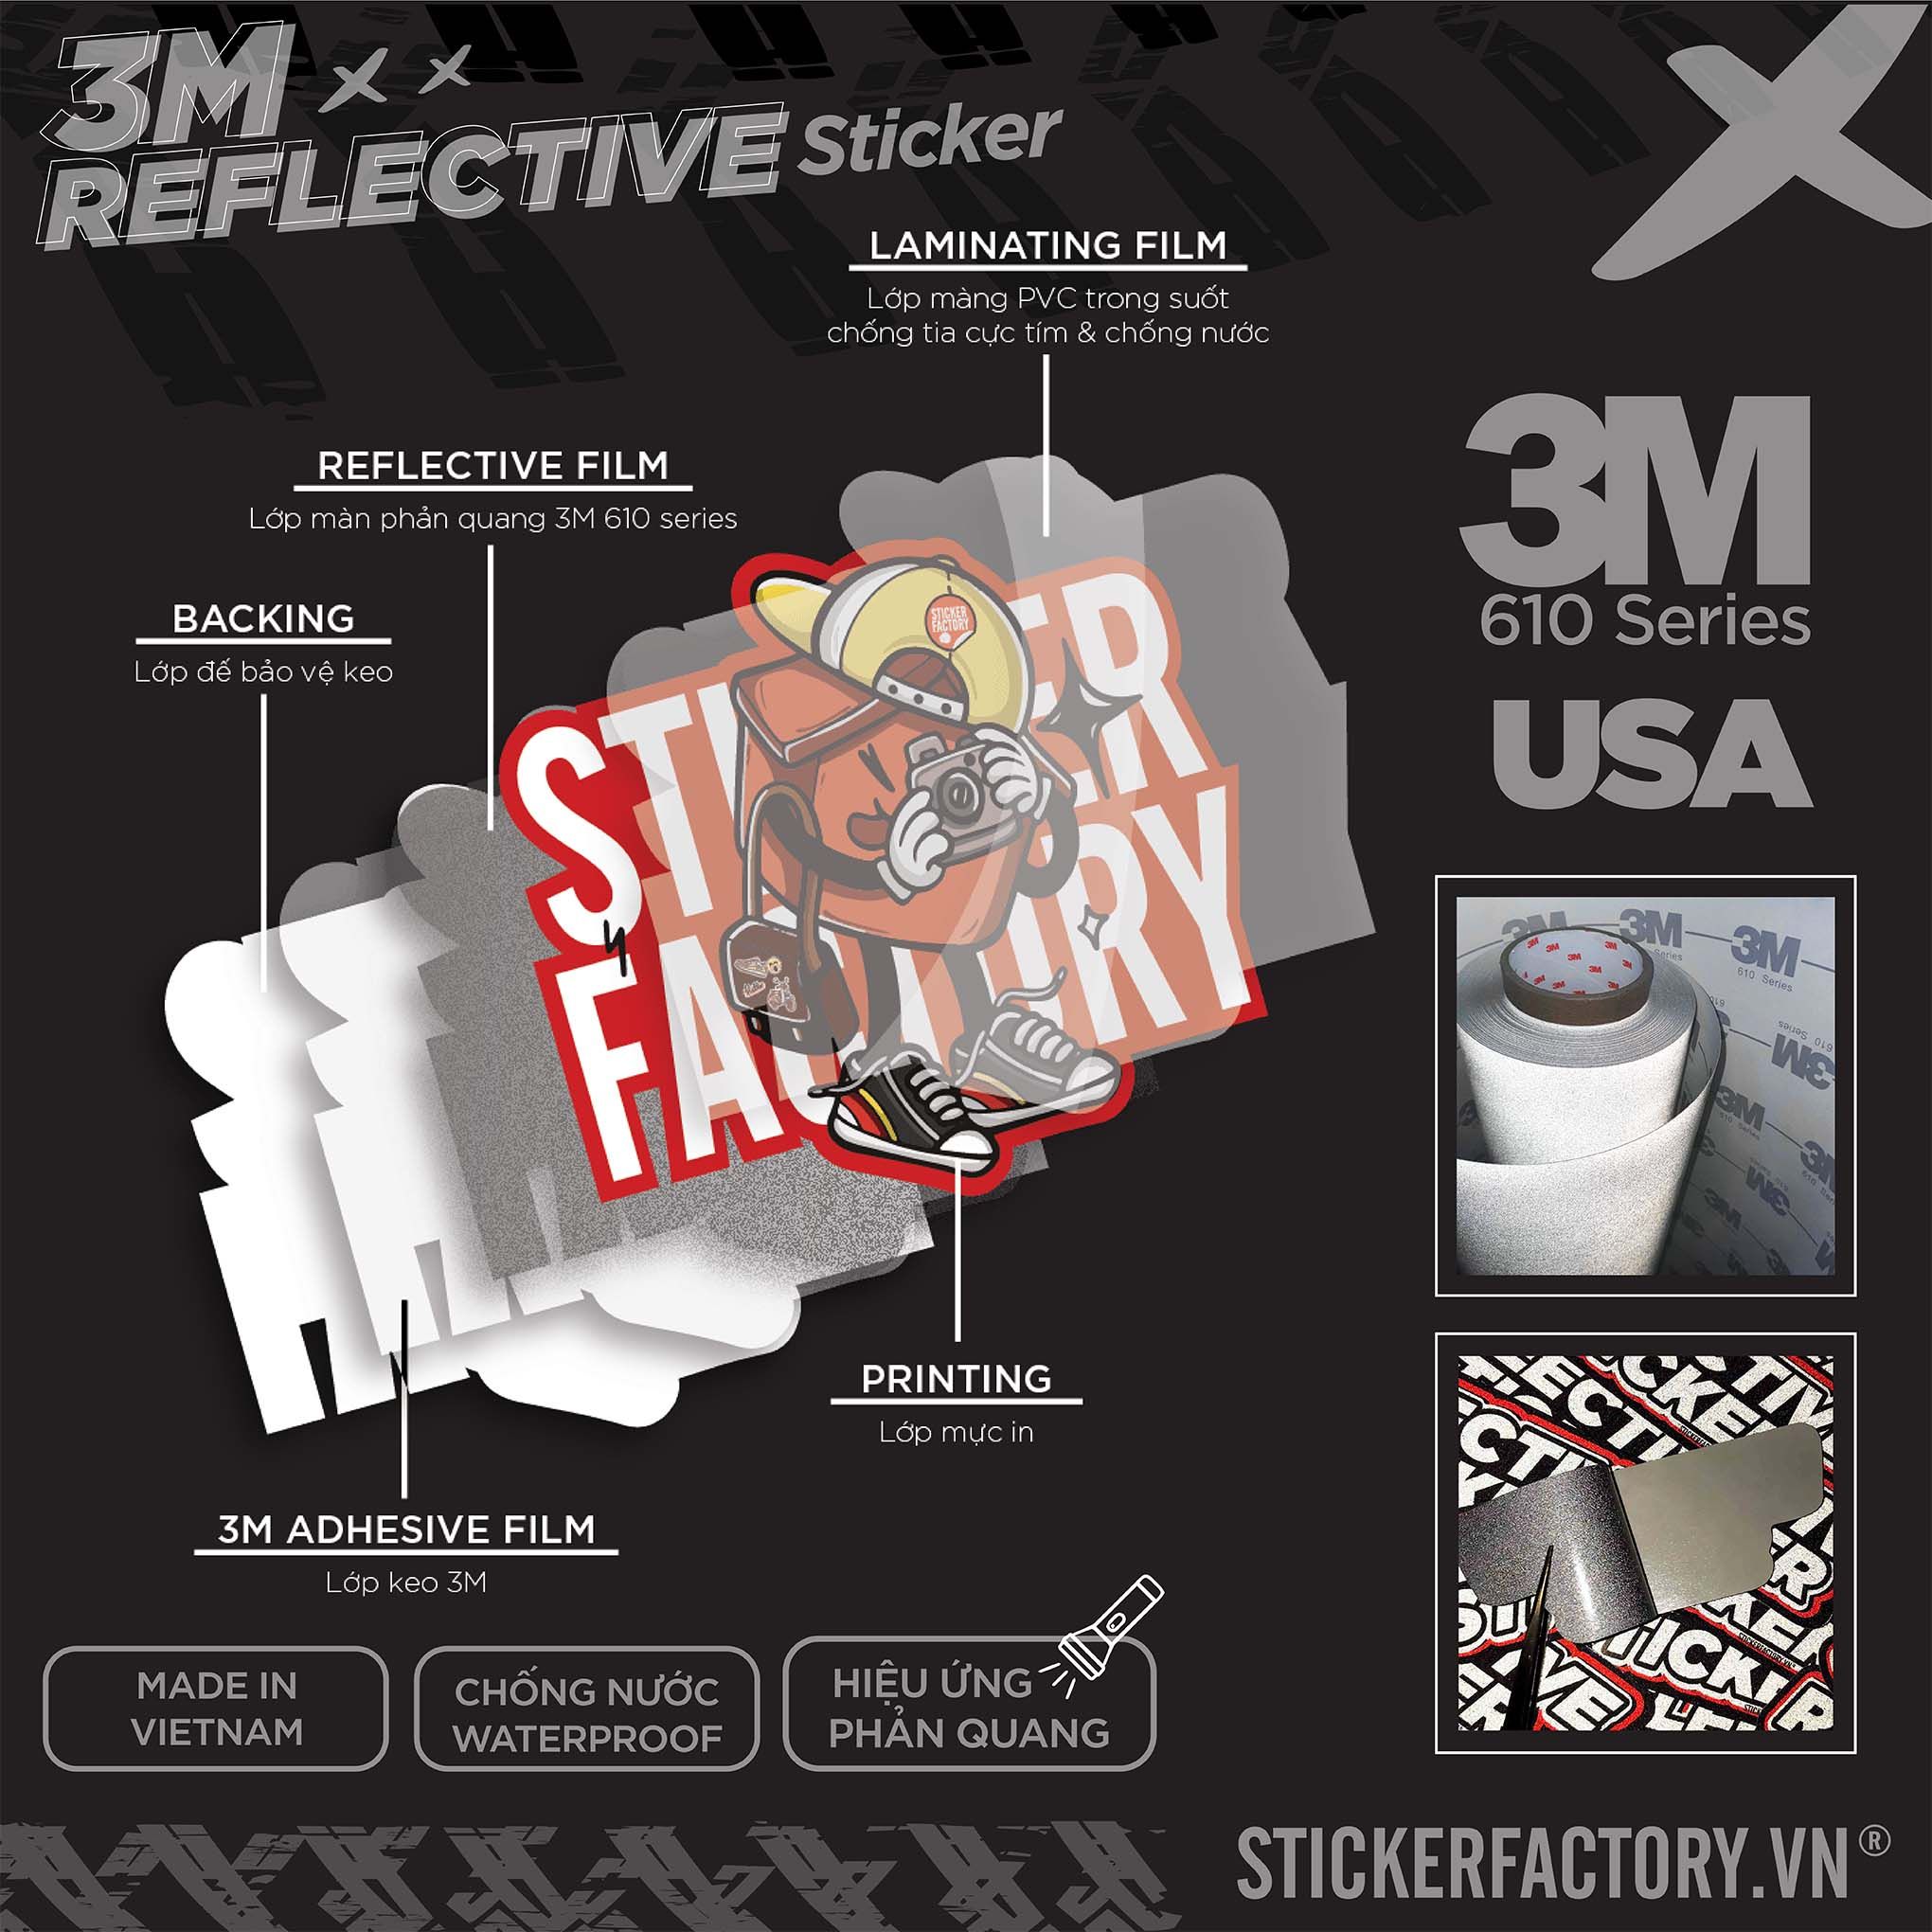 ASTRONAUTS WALKING 3M - Reflective Sticker Die-cut